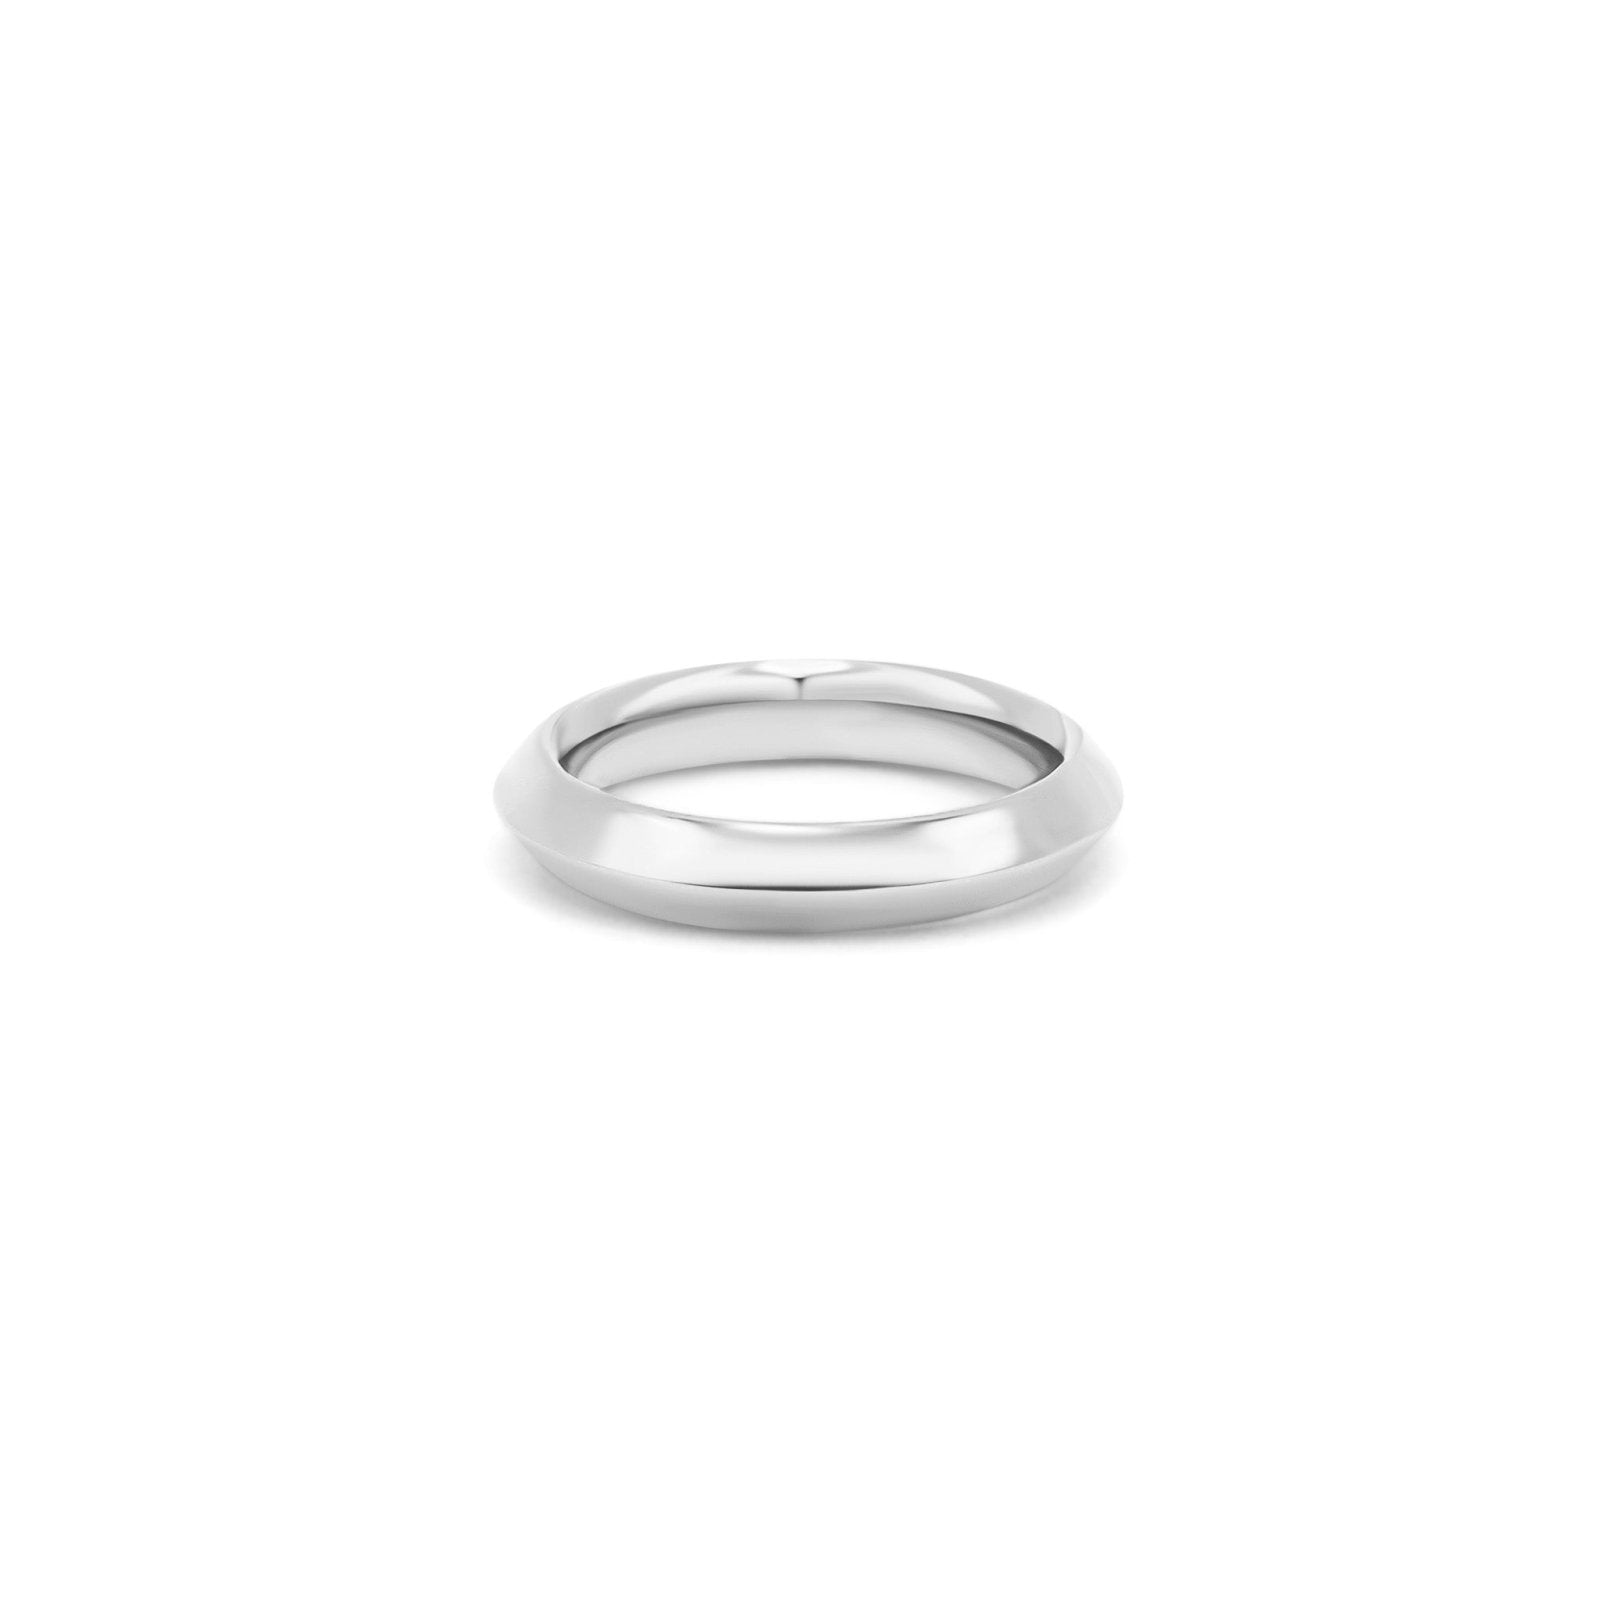 Rosi Silver Ring - Honoura